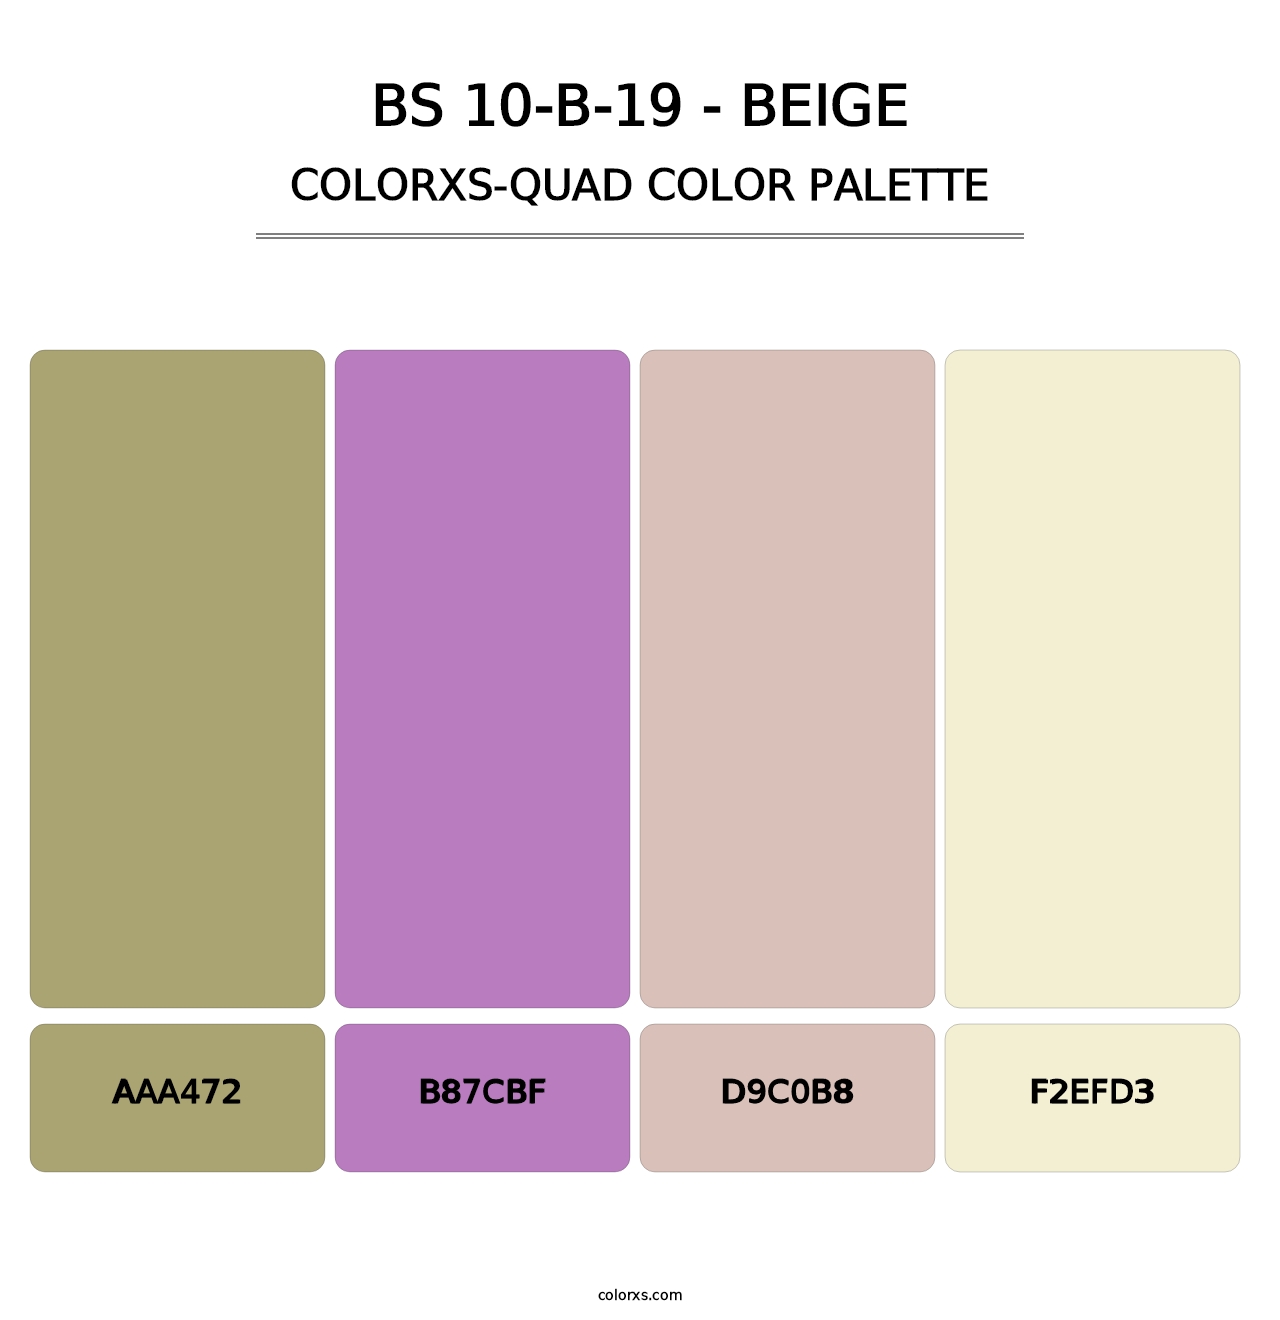 BS 10-B-19 - Beige - Colorxs Quad Palette